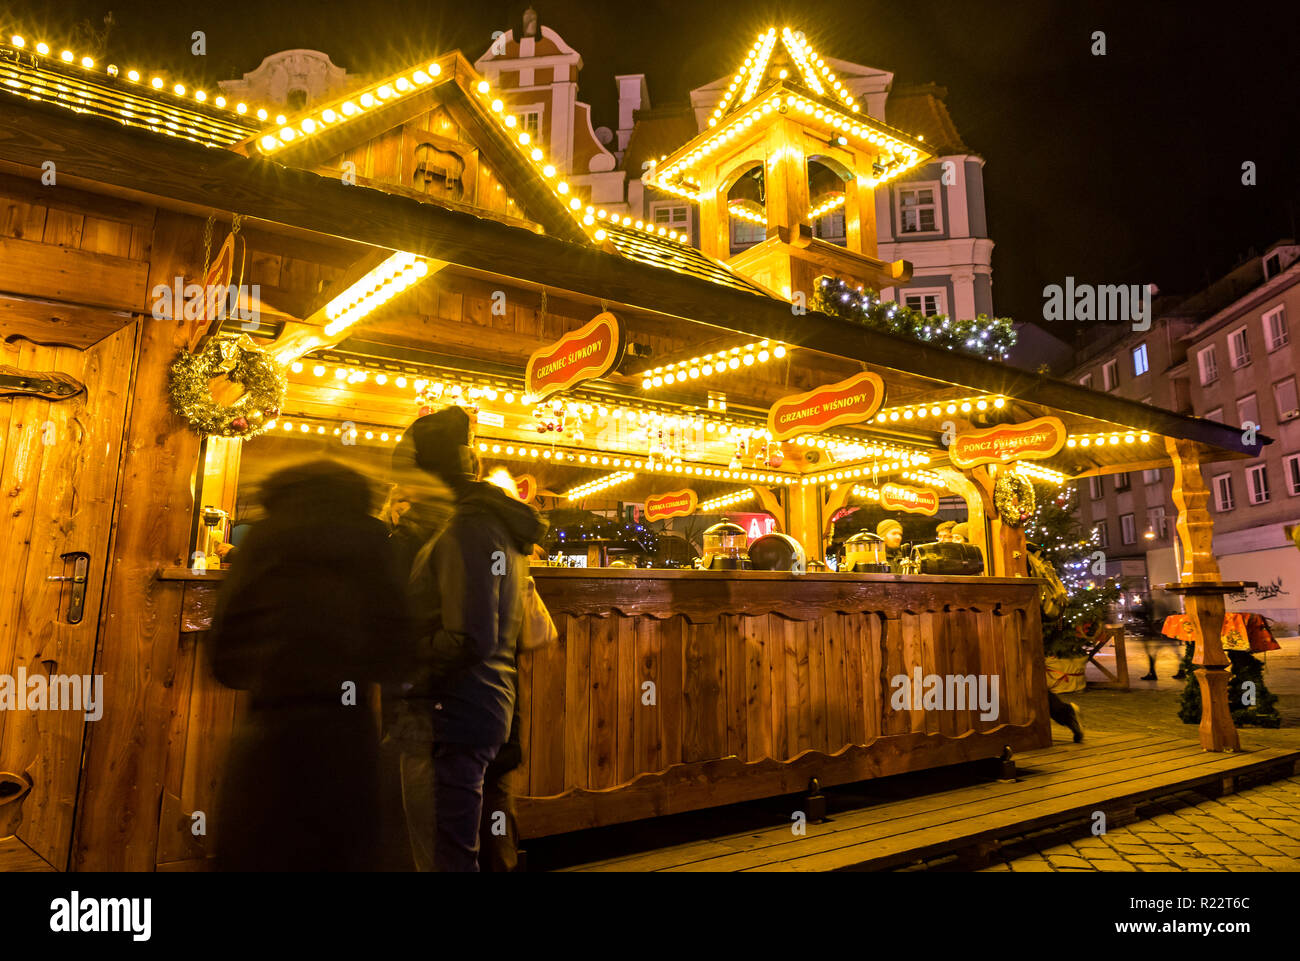 WROCLAW, Polen - Dez 7, 2017: Weihnachtsmarkt auf dem Marktplatz (Rynek) in Wroclaw, Polen. Eines von Polens besten und größten Weihnachtsmärkte, stret Stockfoto